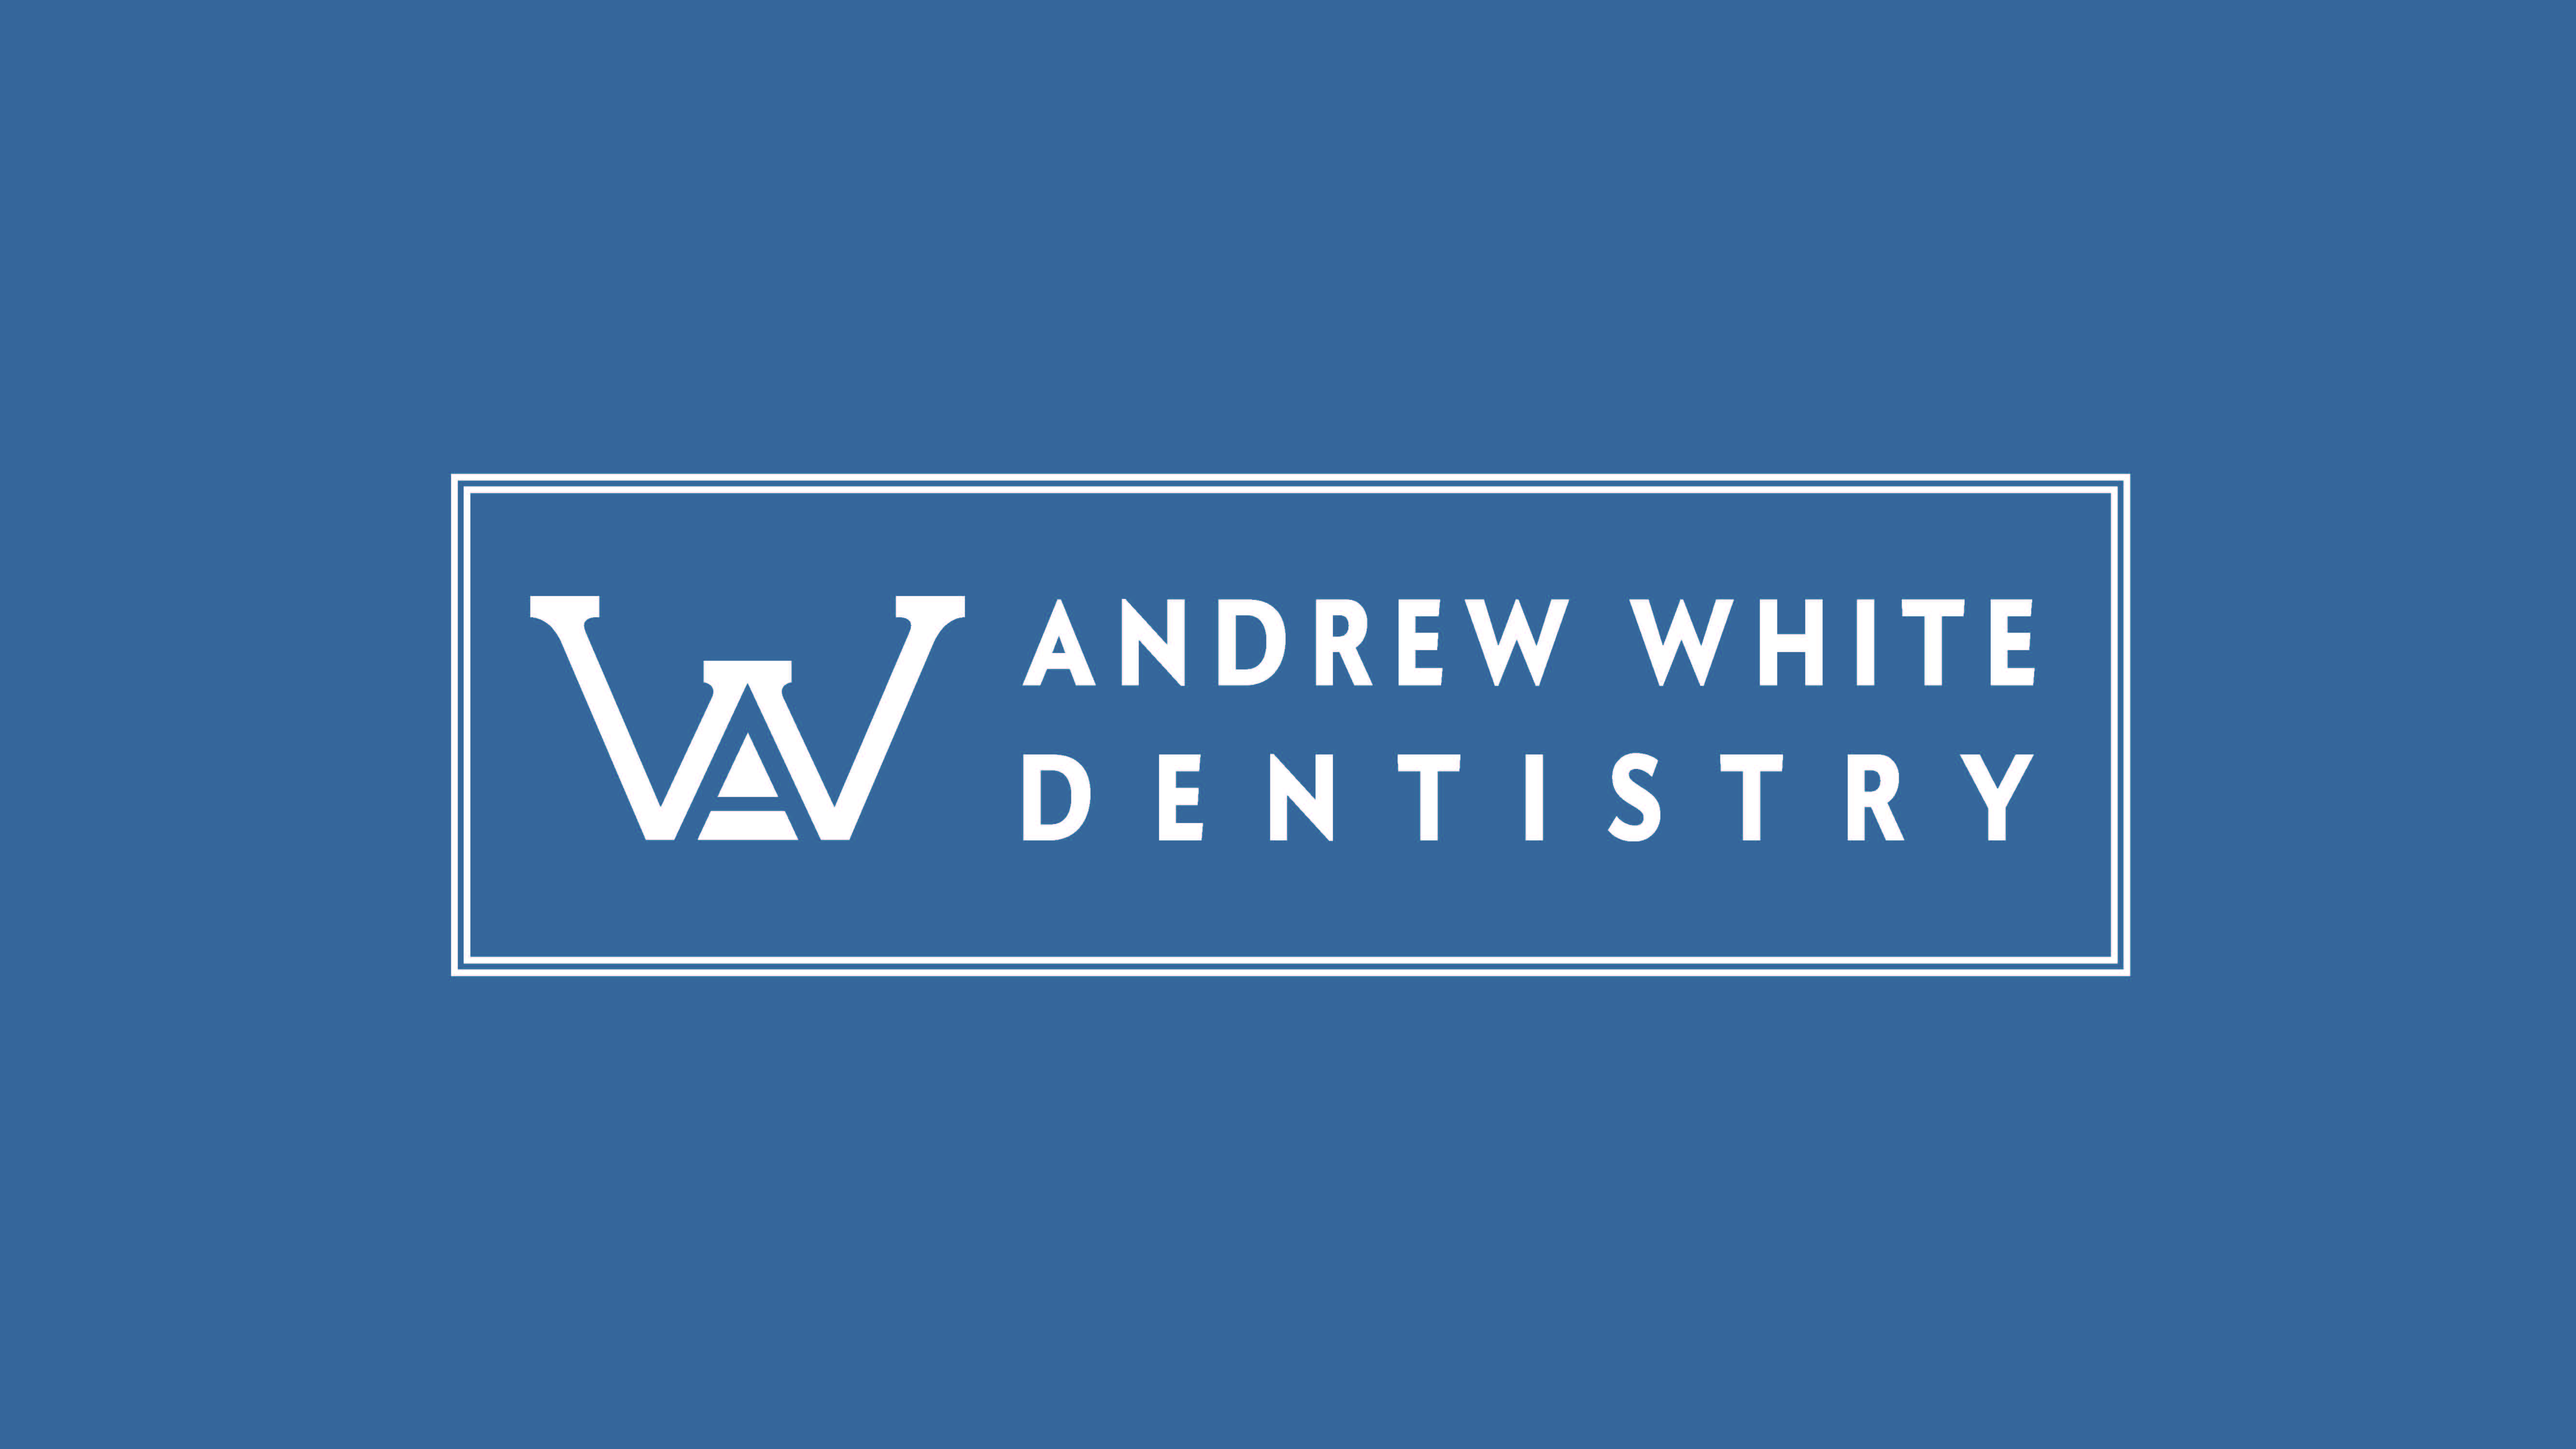 Andrew White Dentistry